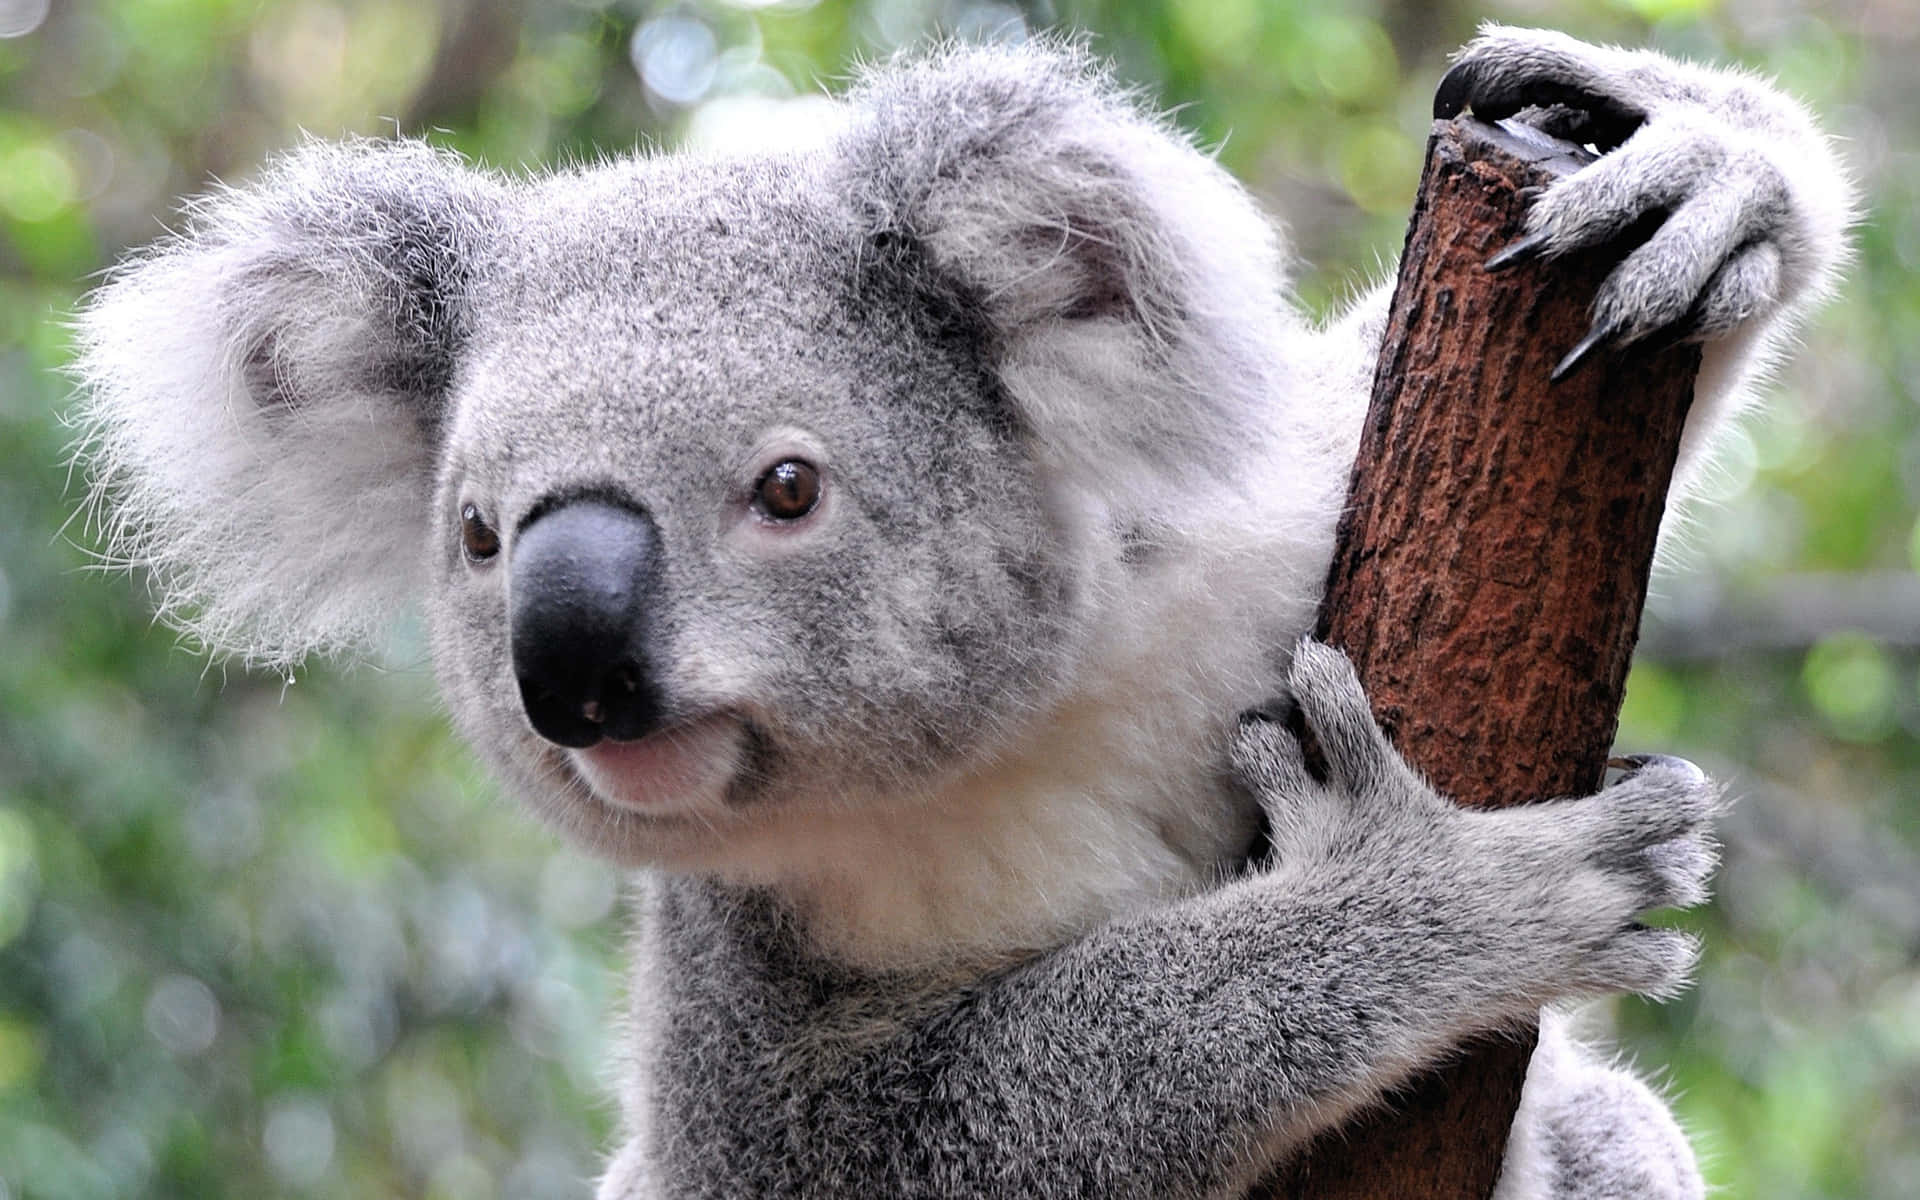 A cute koala enjoying some leaves